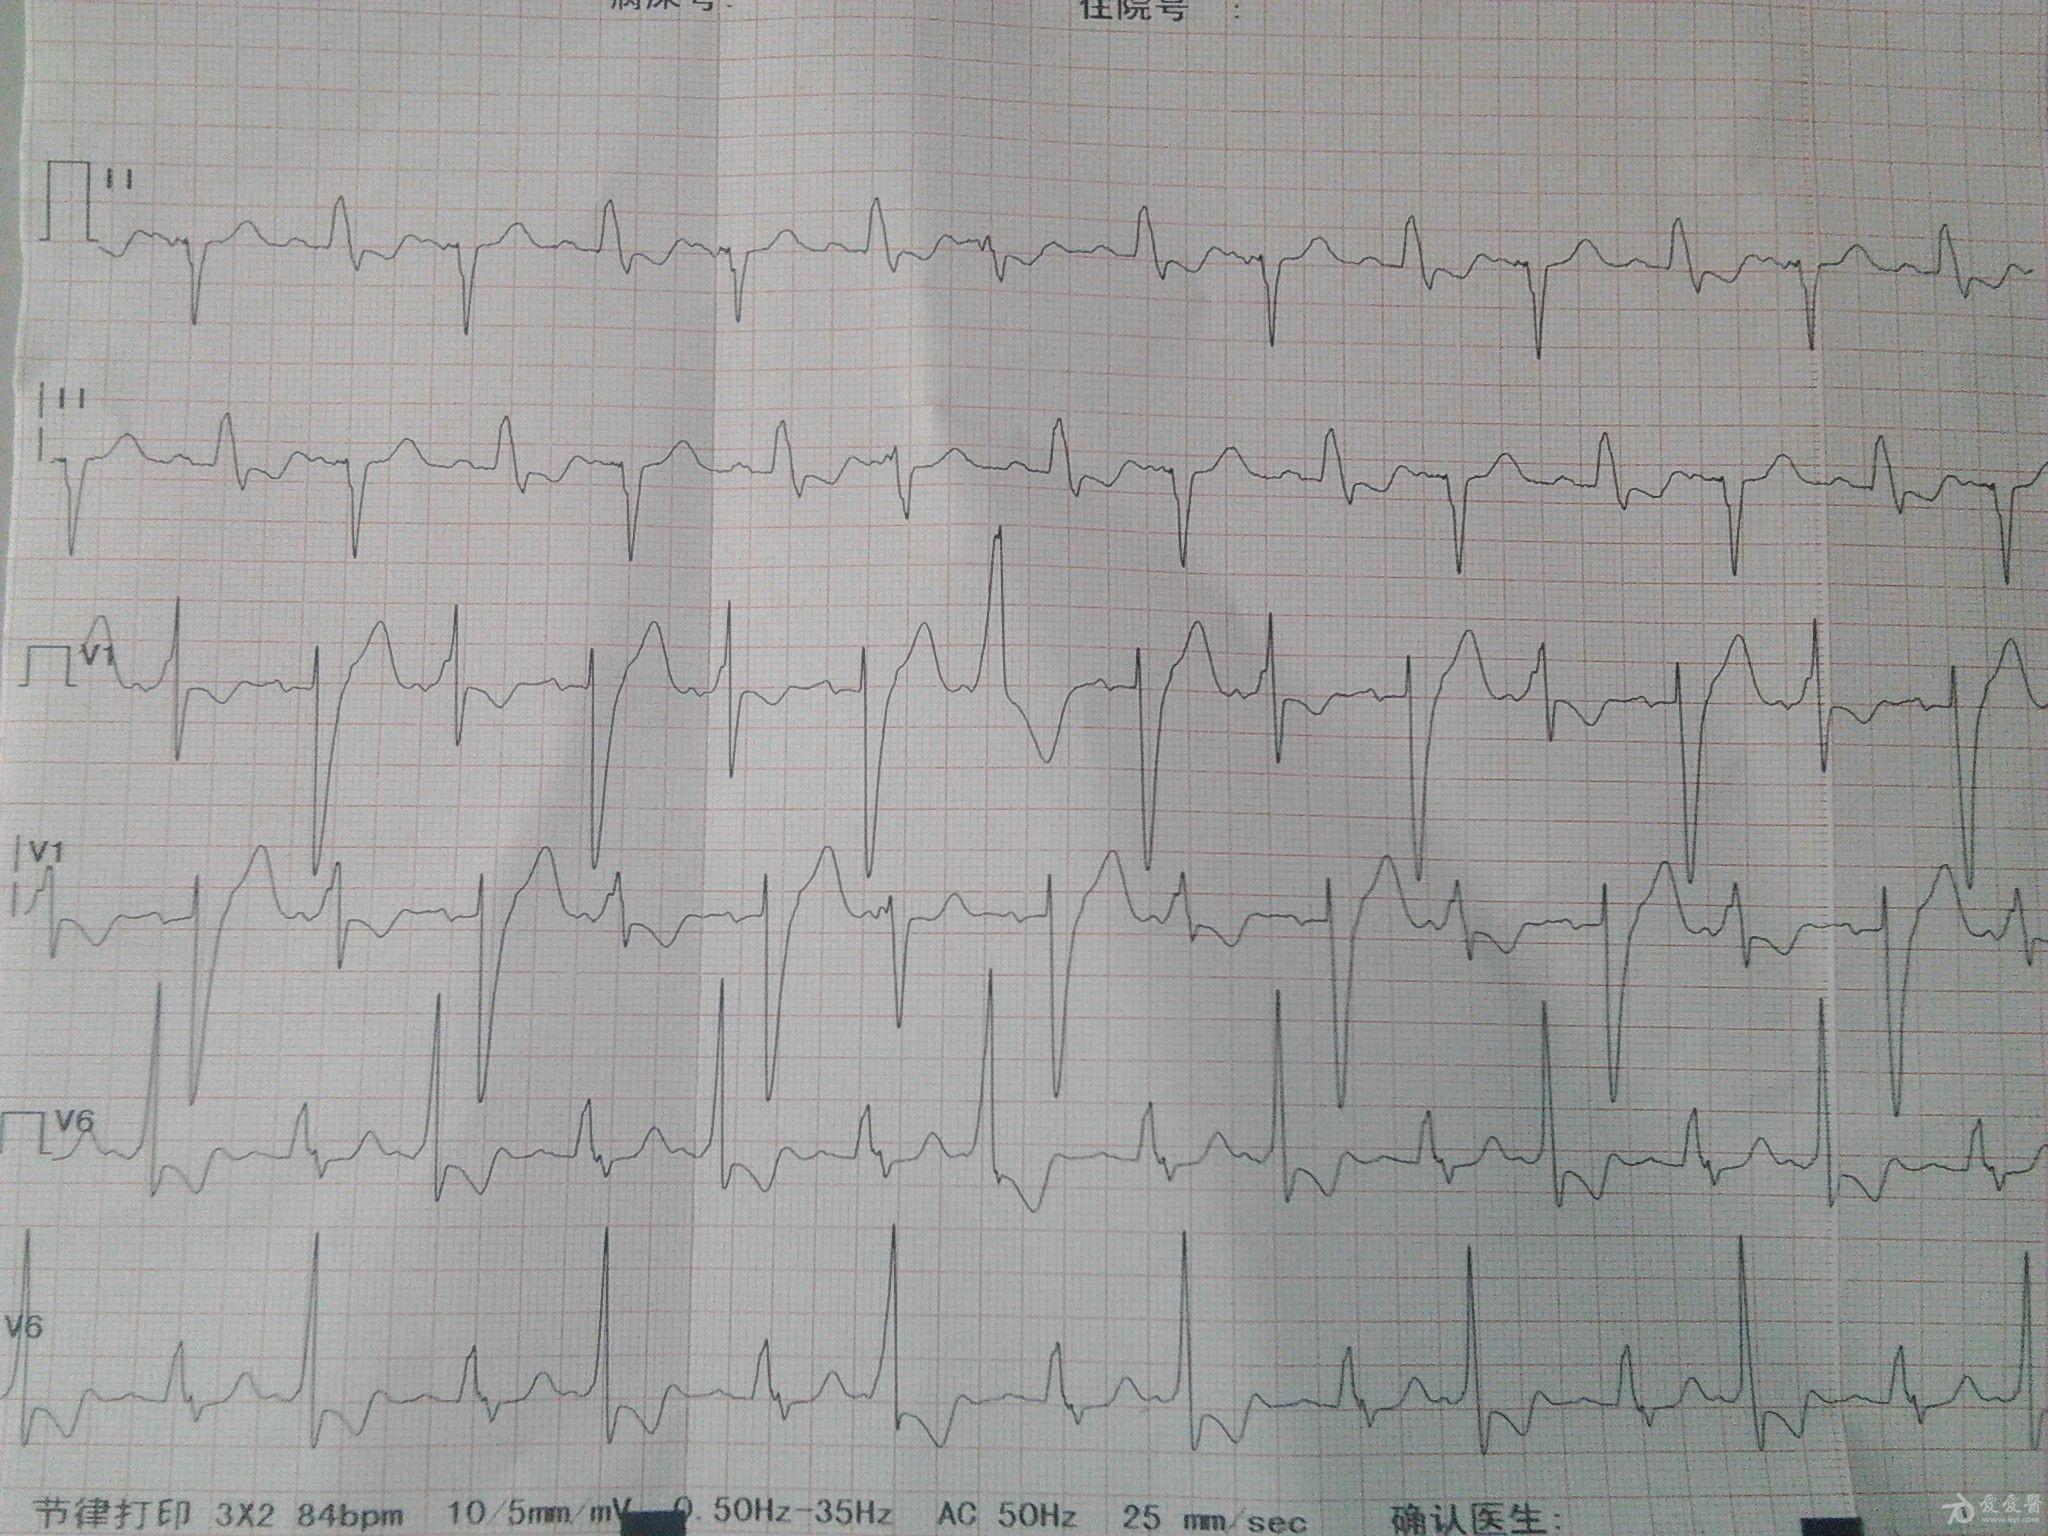 扩张性心脏病的心电图,大家看看